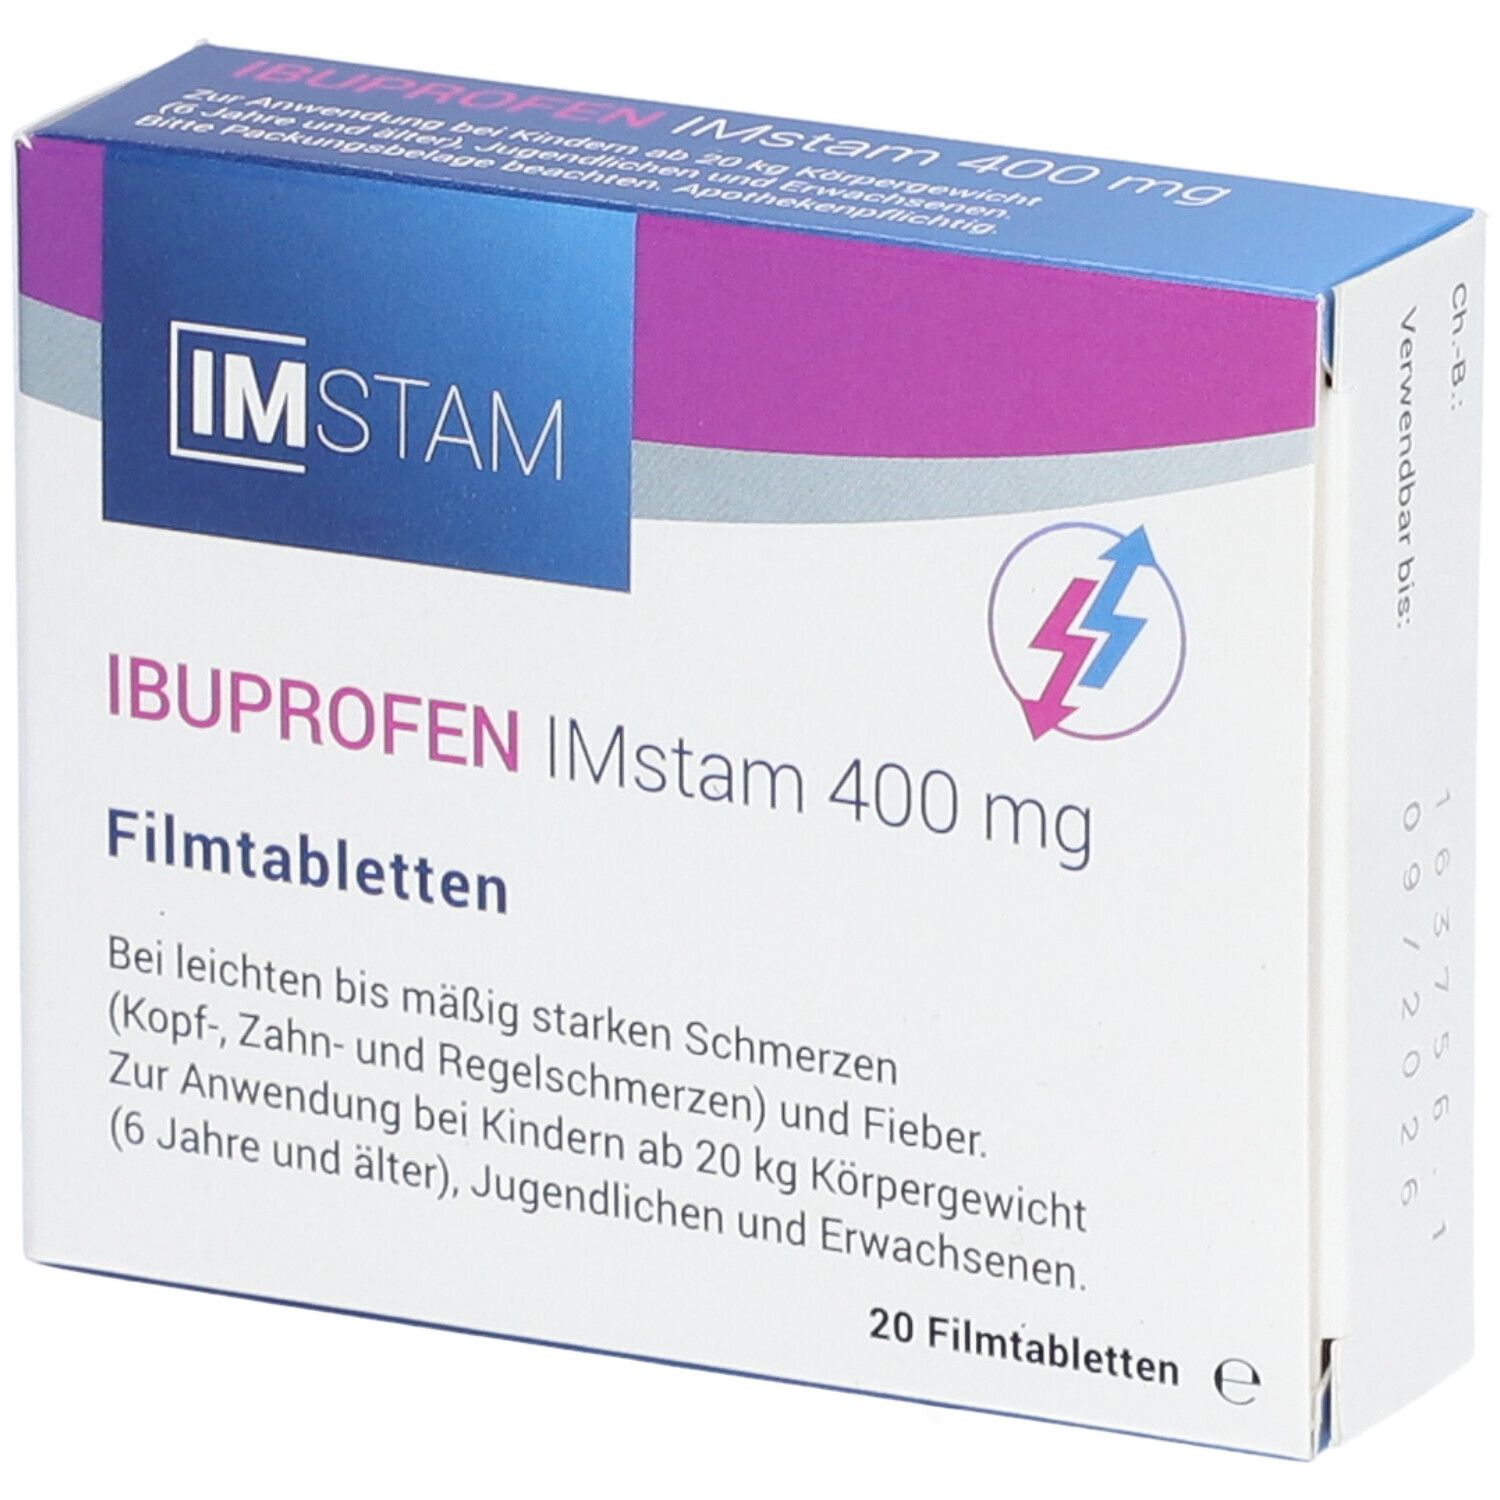 Ibuprofen IMstam 400 mg Filmtabletten